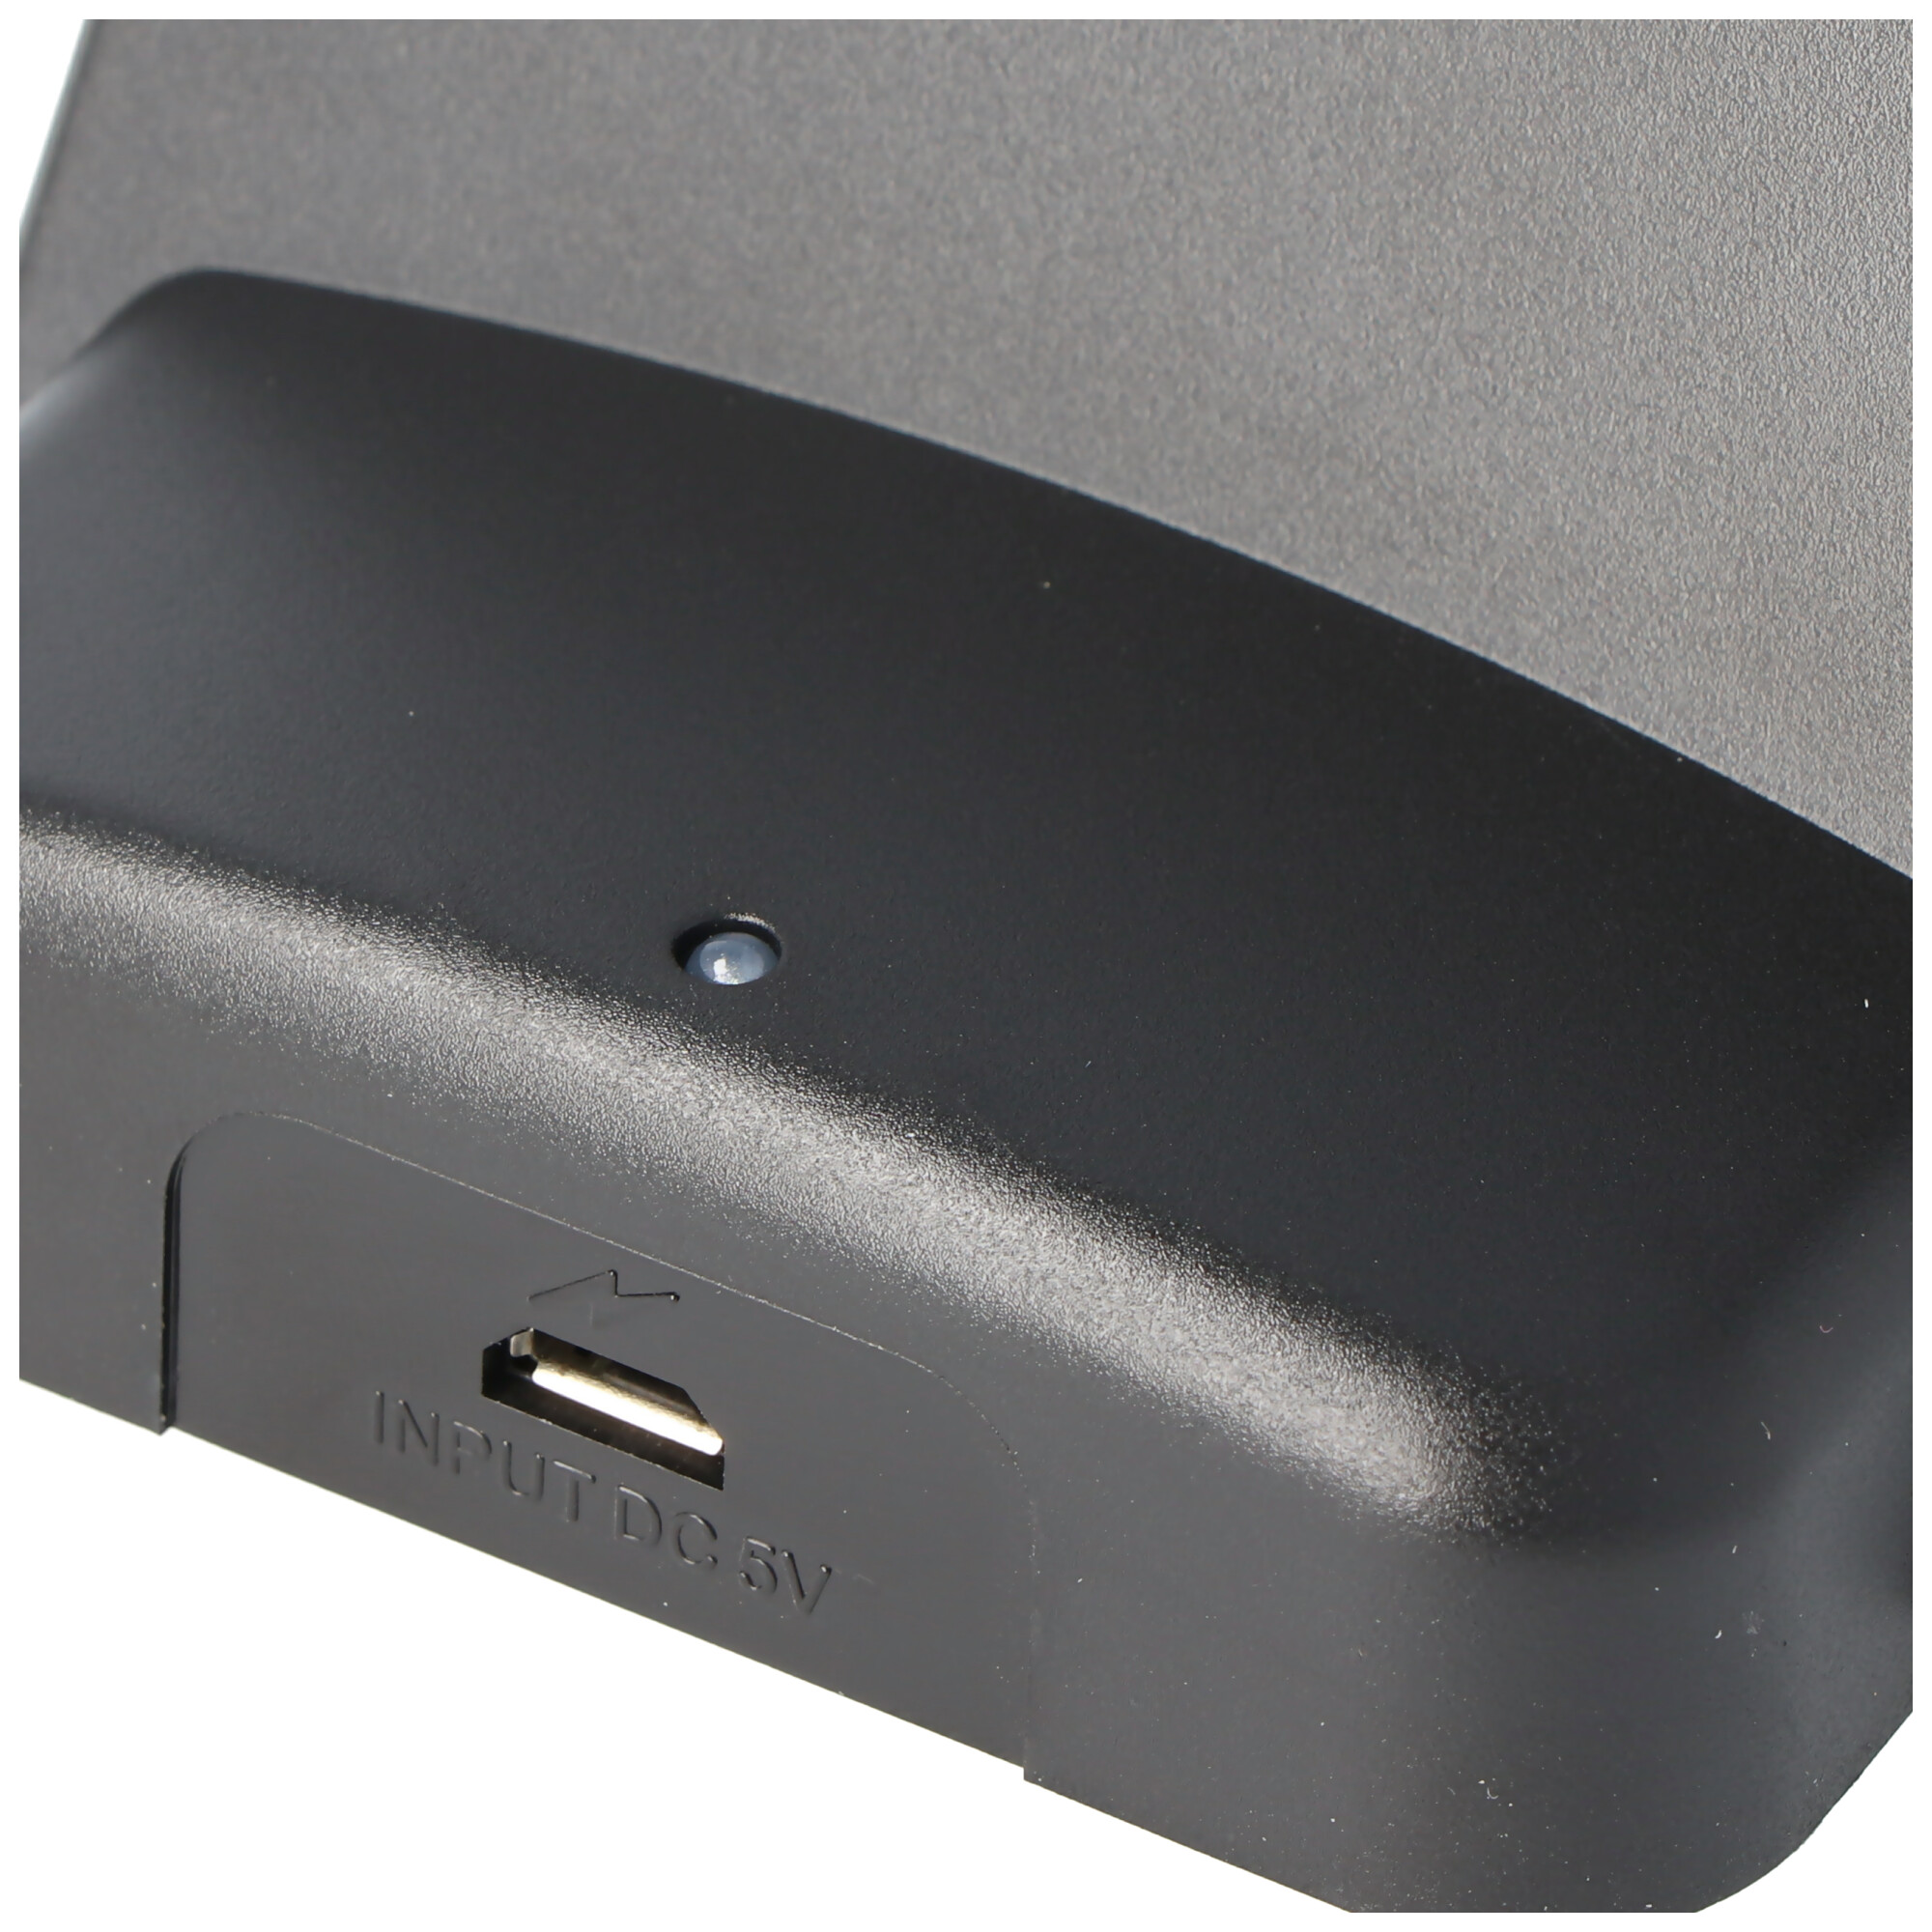 USB Dockingstation passend für iPhone, Apple iPod mit Lightning Connector, zum Laden und Synchronisieren Ihrer Geräte inklusive USB-Anschlusskabel